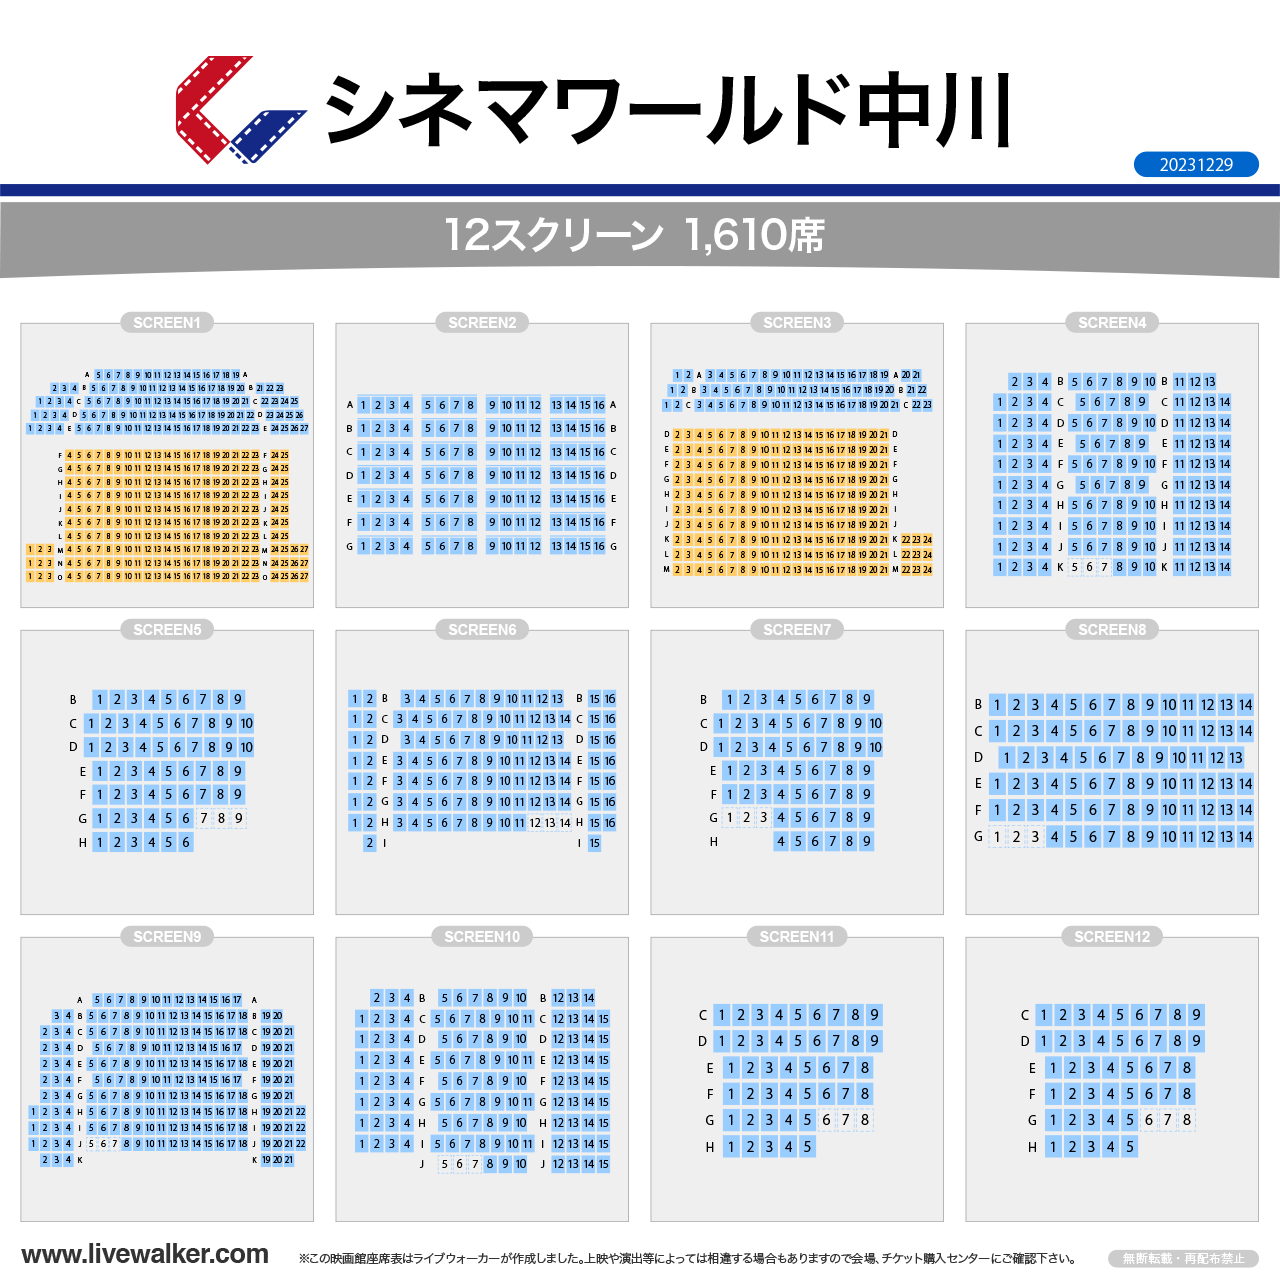 中川コロナシネマワールドスクリーンの座席表